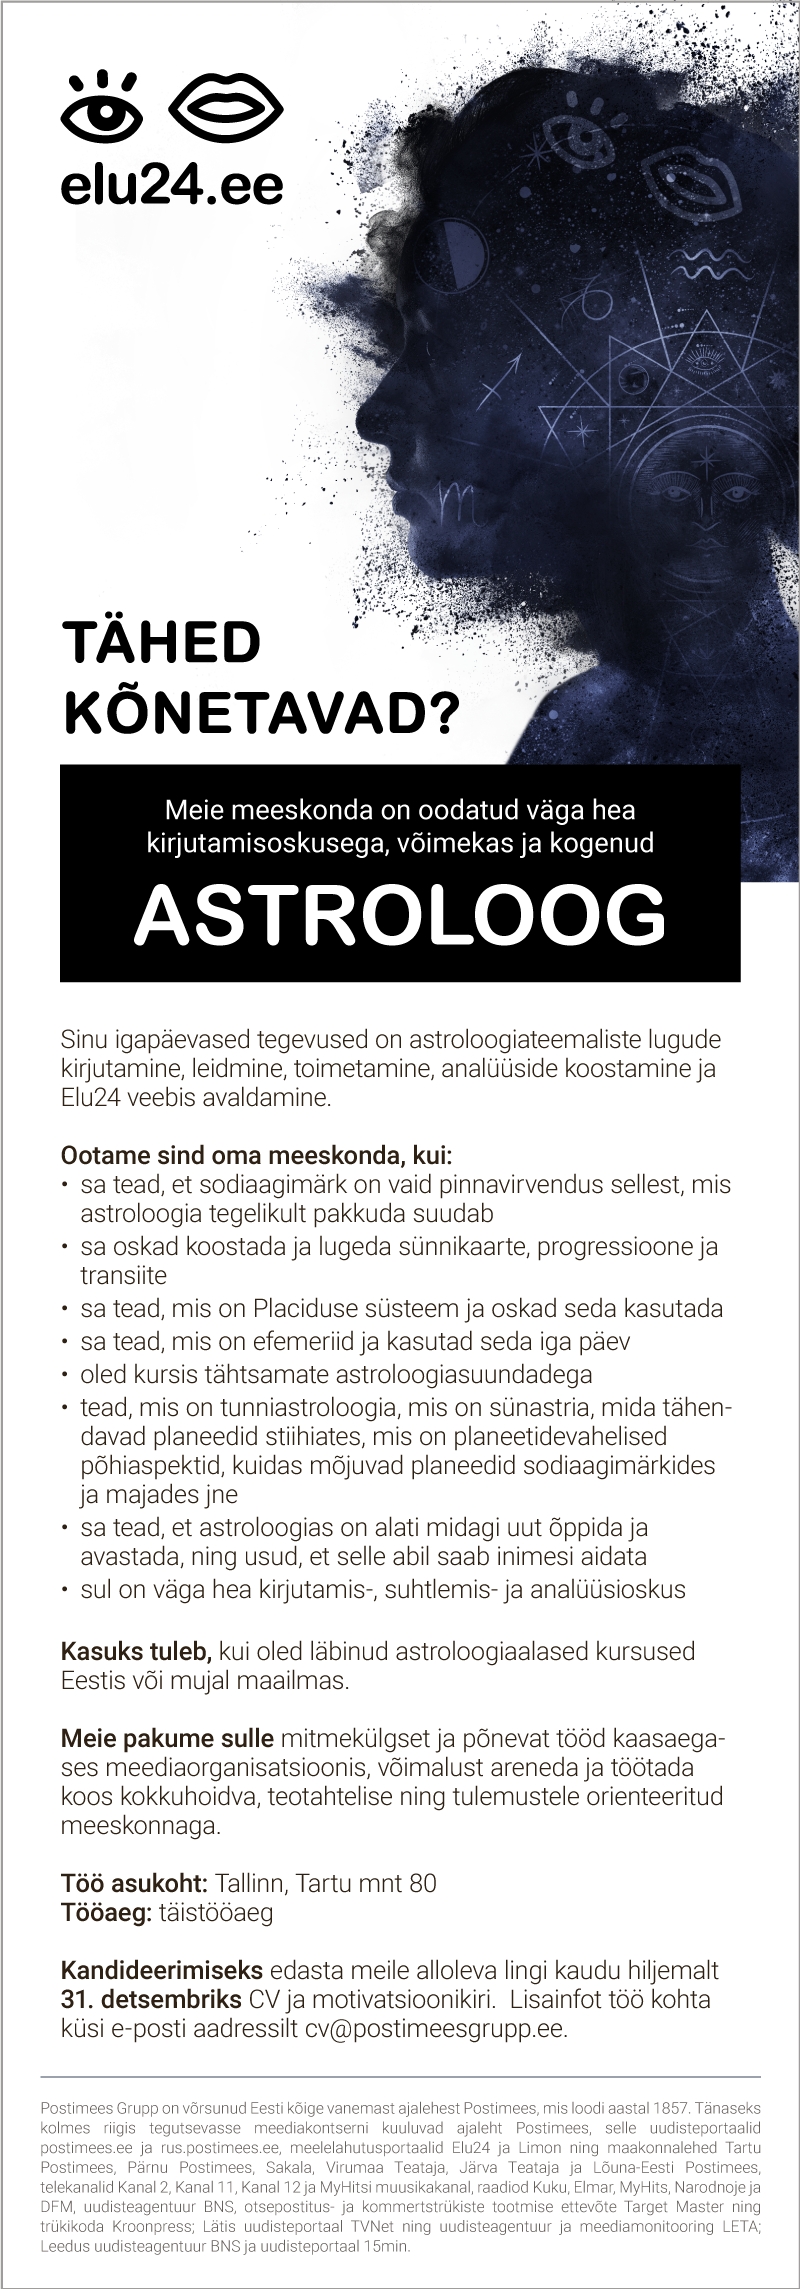 Postimees Grupp Astroloog